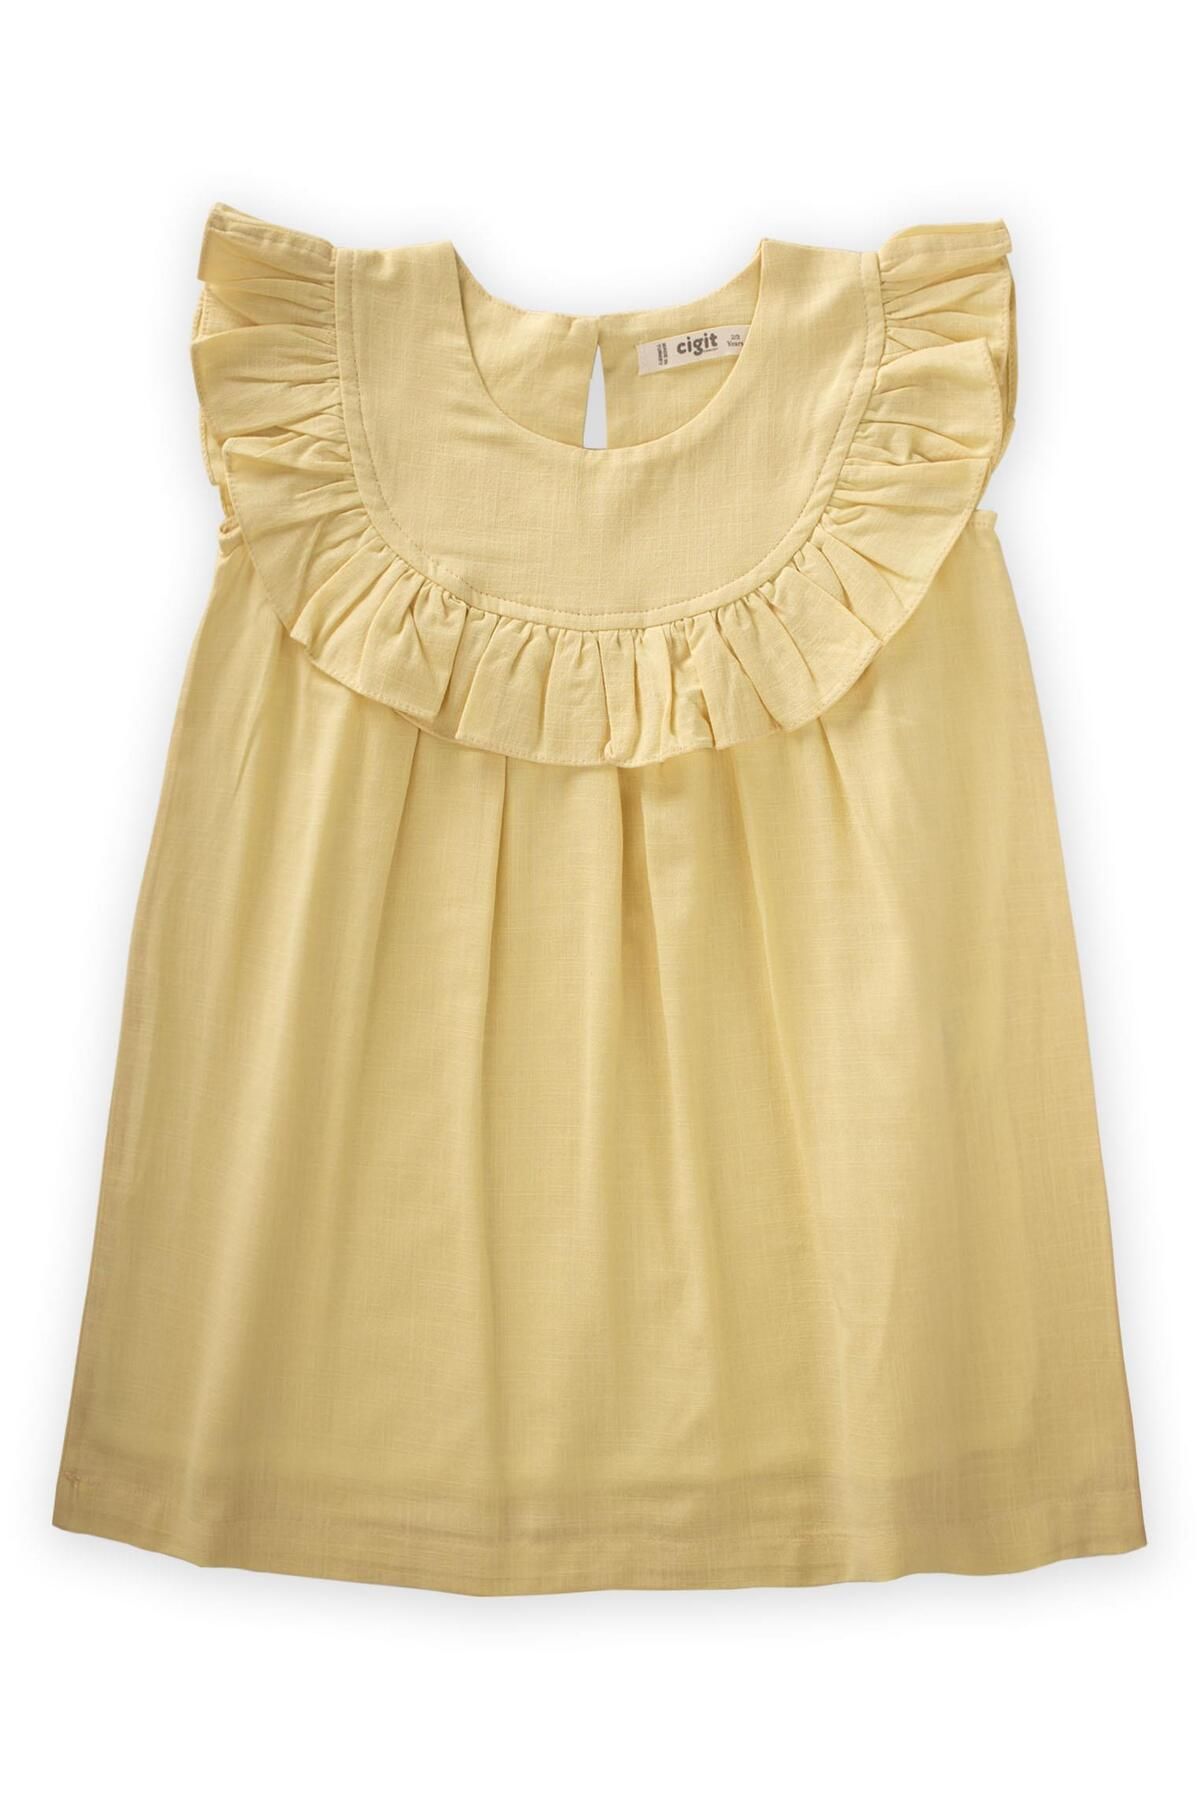 Cigit Robadan Fırfırlı Elbise 2-7 Yaş Sarı